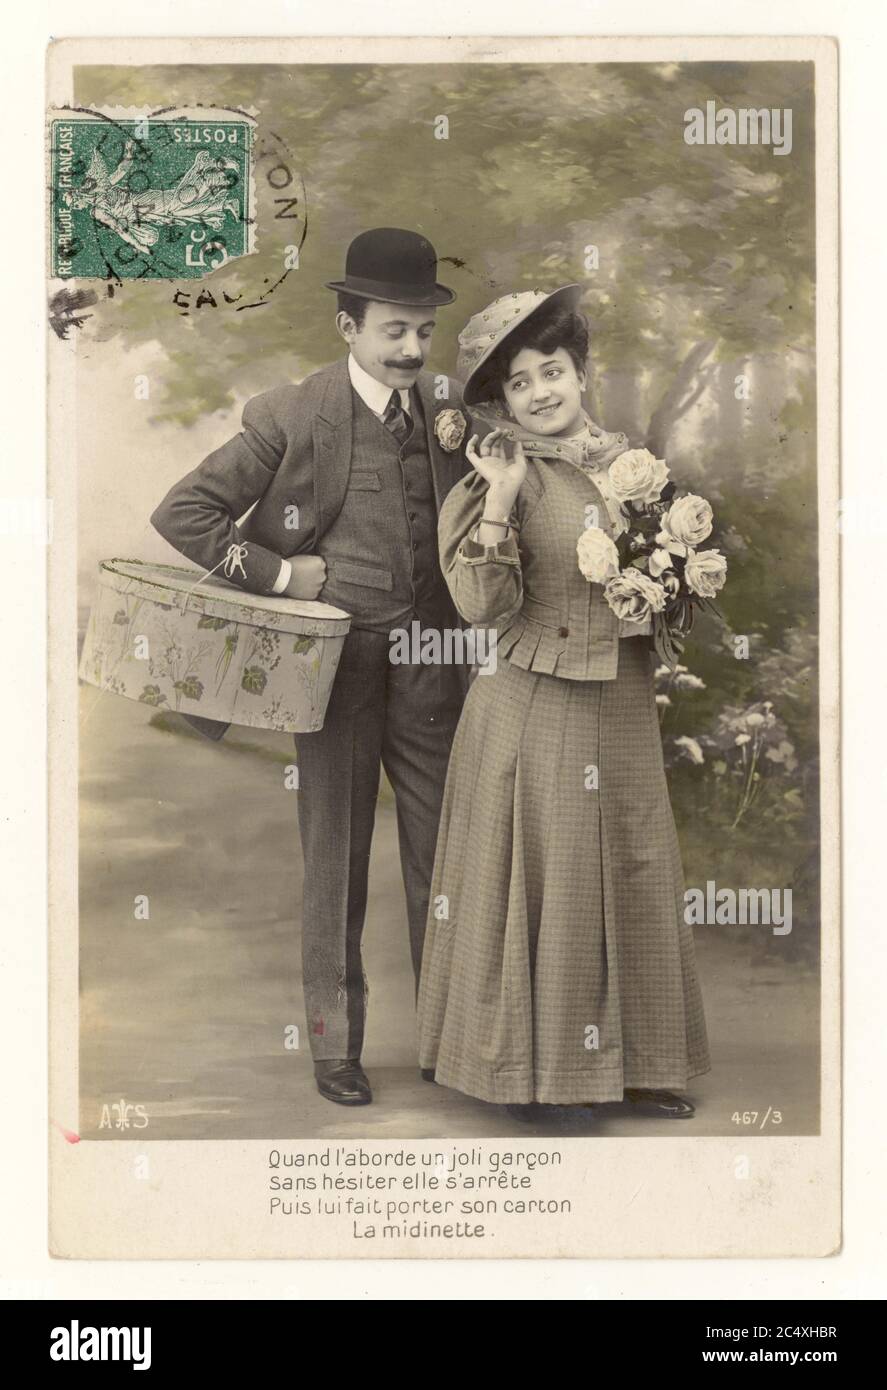 Originale inizio del 1900 francese sentimental tinta cartolina saluti - due giovani amanti, l'uomo indossando un cappello bowler, porta la donna di shopping, postalmente utilizzato francobollo verde di fronte alla cartolina Francia, circa 1911 Foto Stock